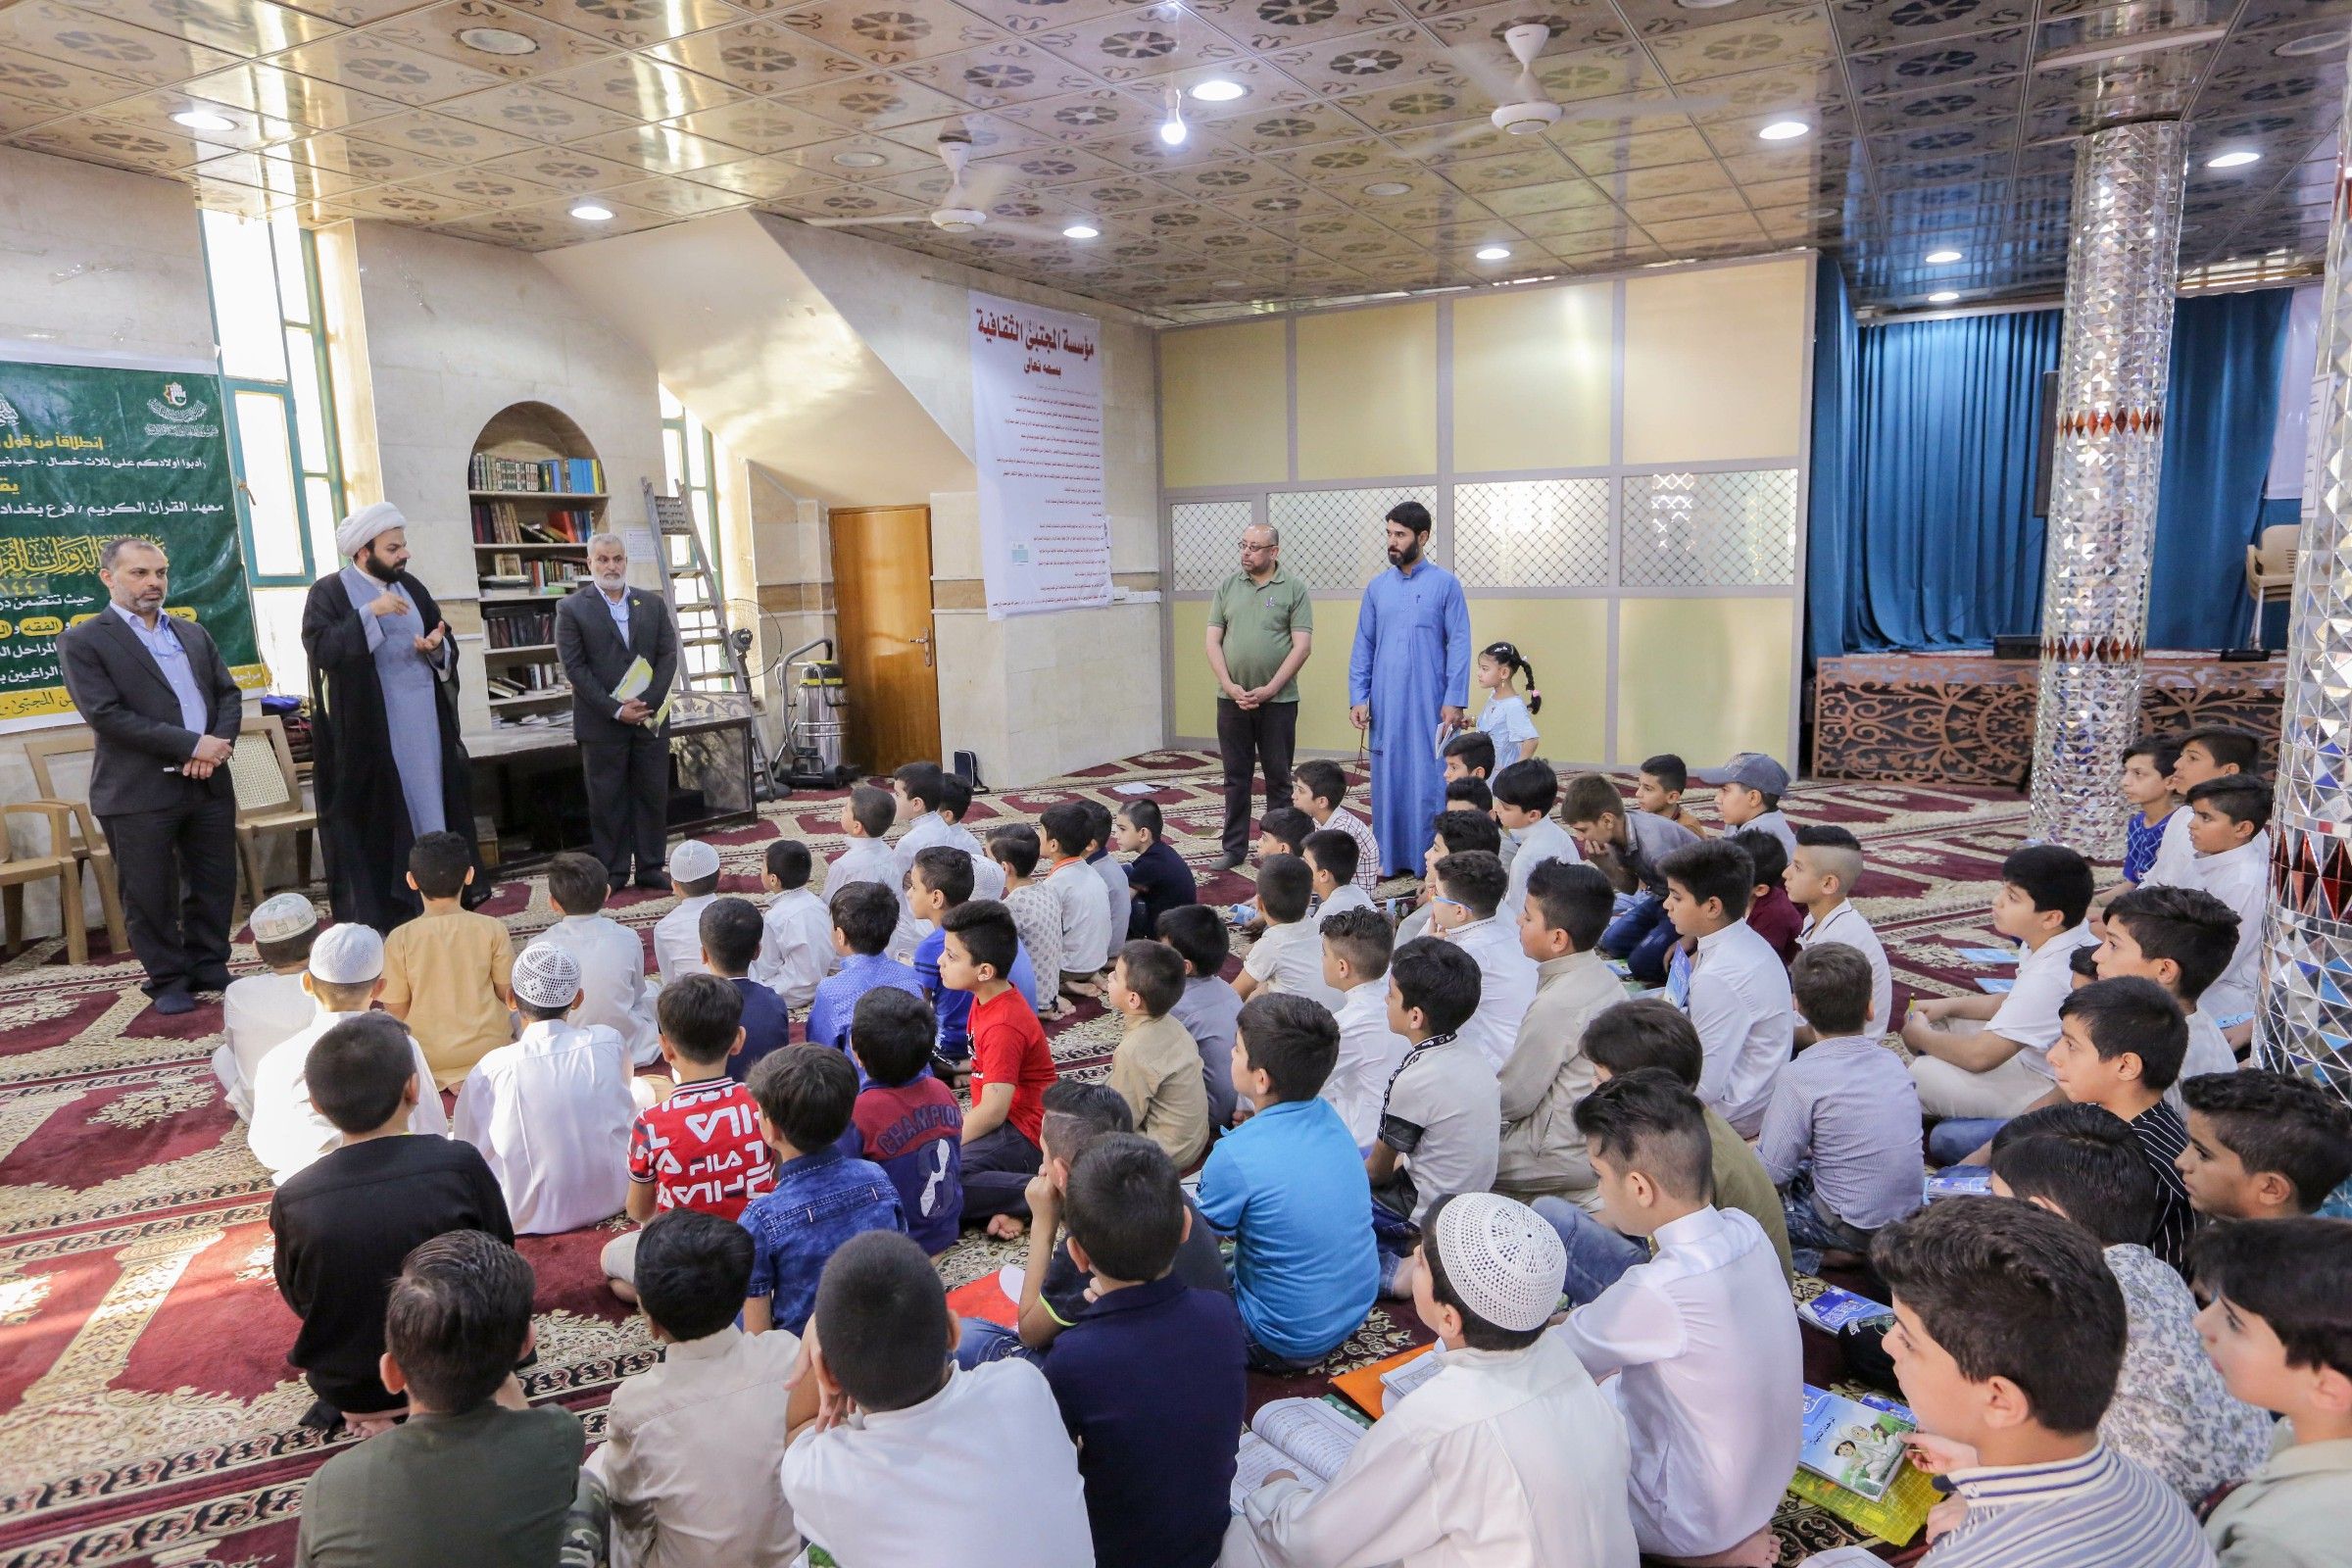 ضمن جولاته التفقدية مدير معهد القرآن الكريم يزور حلقات مشروع الدورات القرآنية الصيفية في بغداد